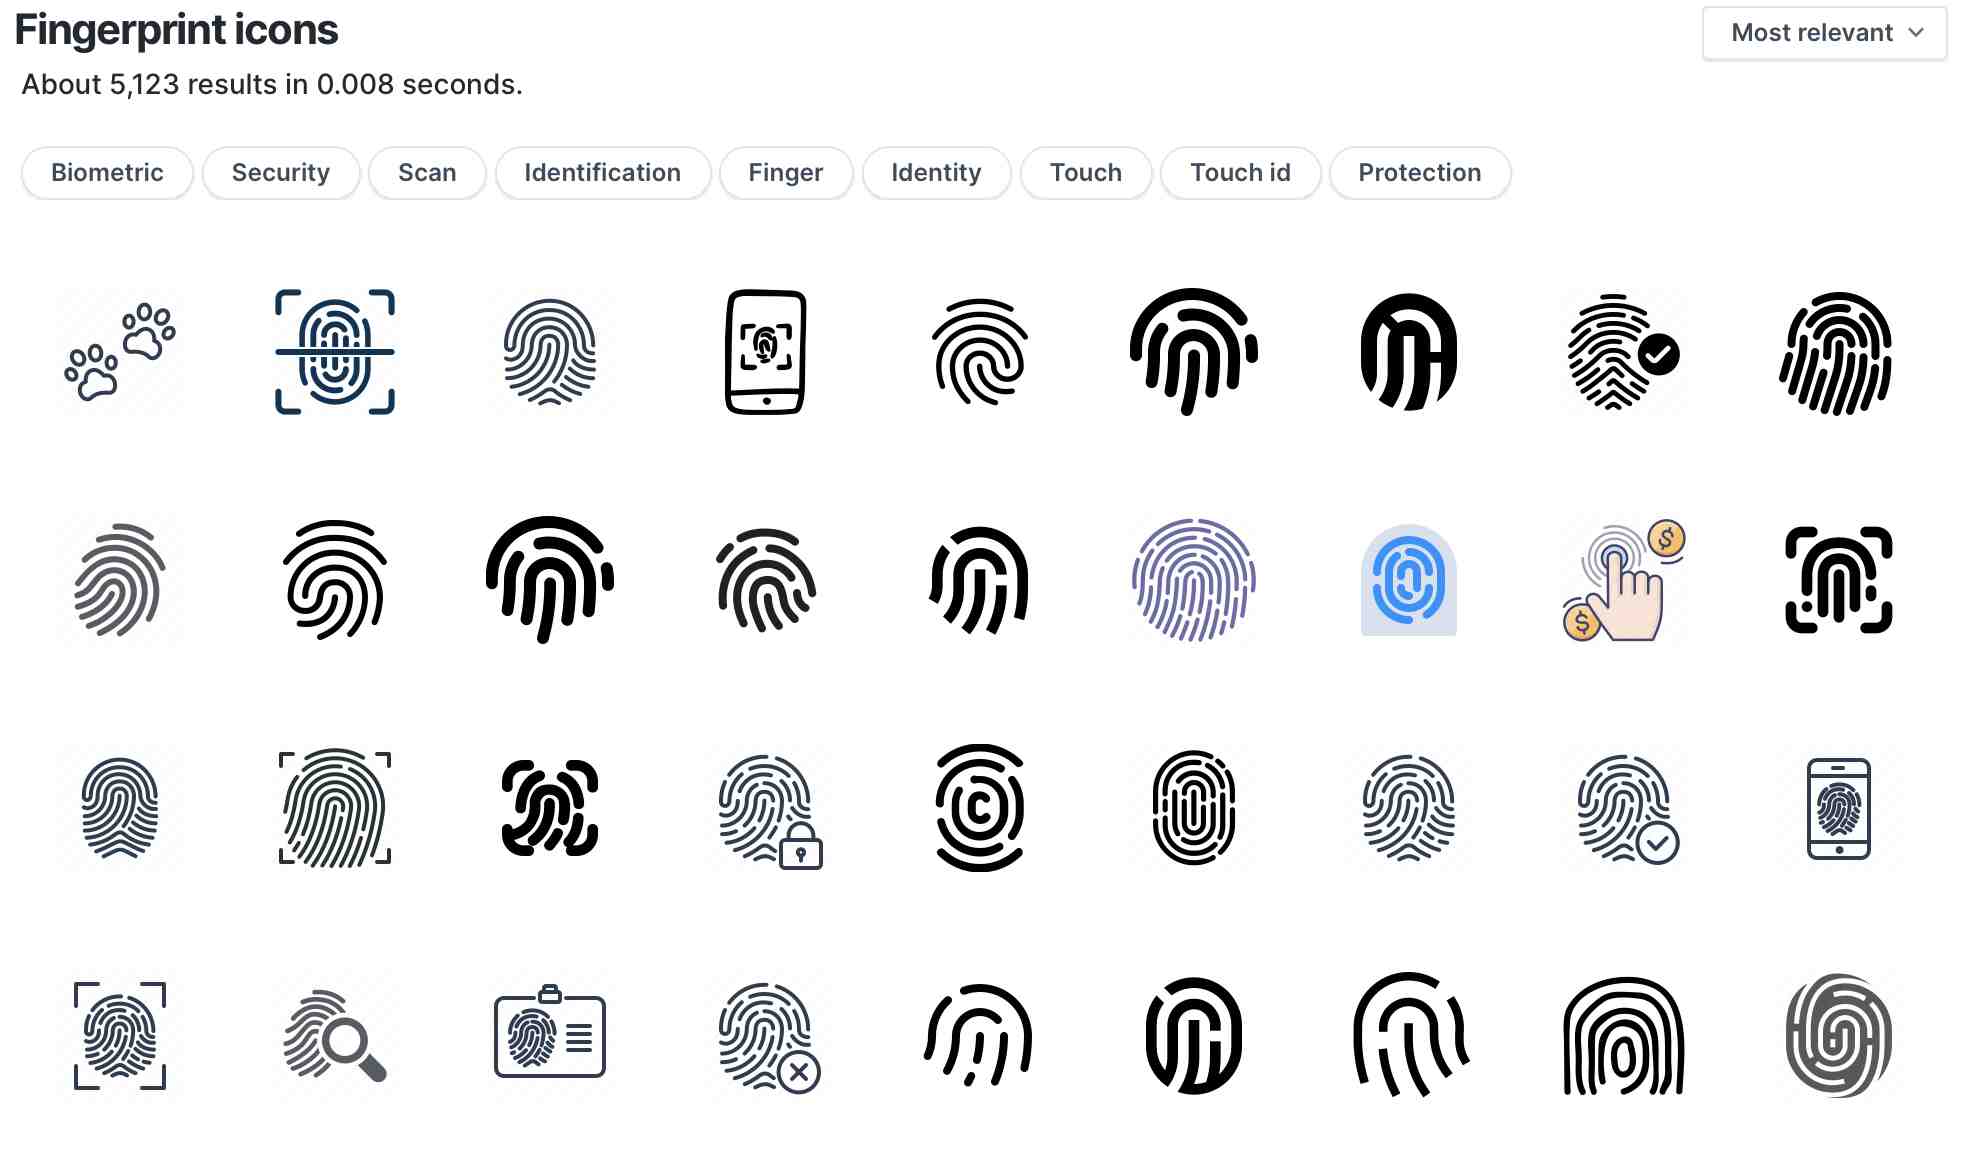 Fingerprint icon results on iconfinder.com